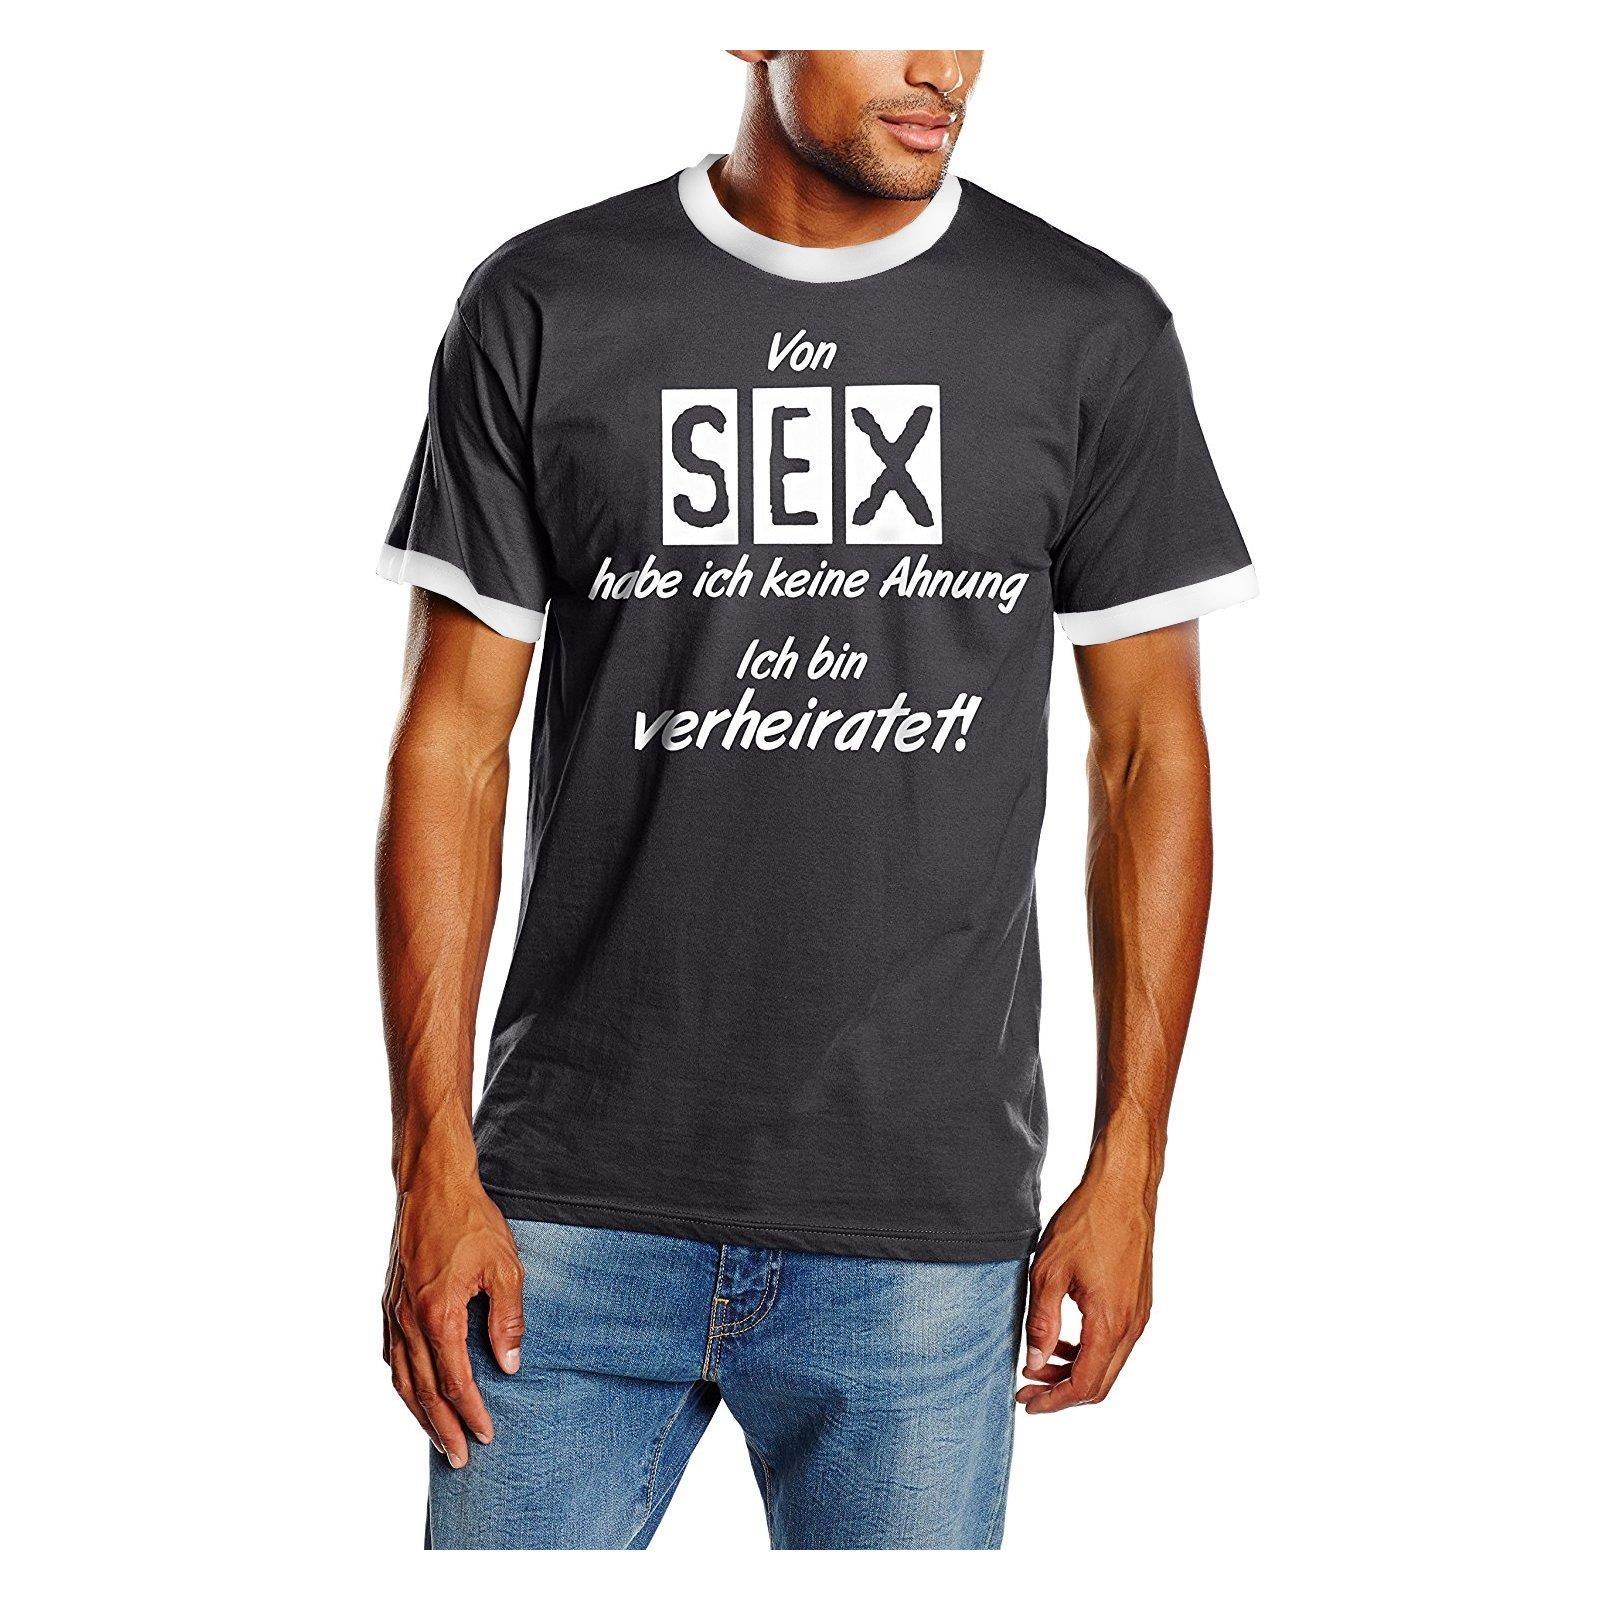 34++ Witzige t shirt sprueche ideas | spruchestm